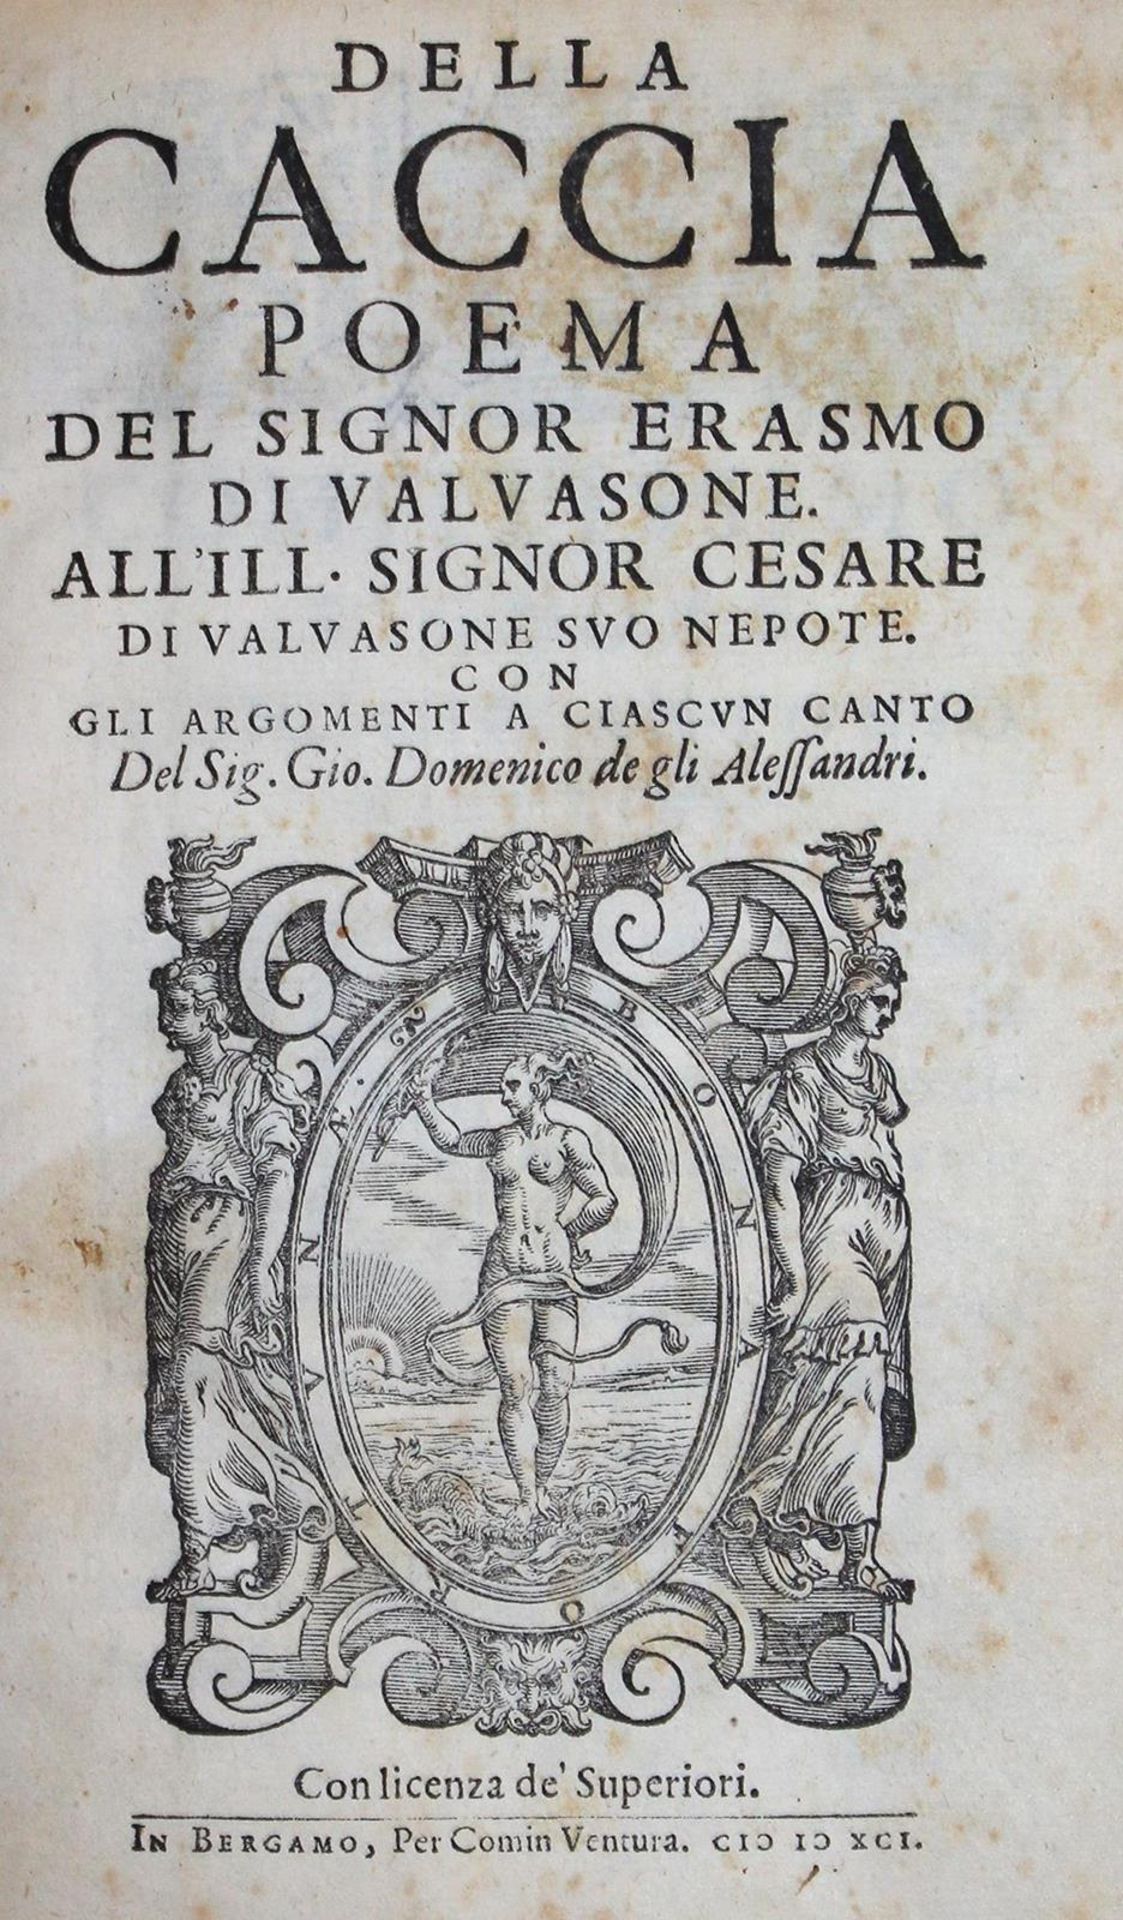 Valvasone,E.de.Della caccia poema. Bergamo, Comin Ventura 1591. Mit Holzschn.-Druckermarke a.T.